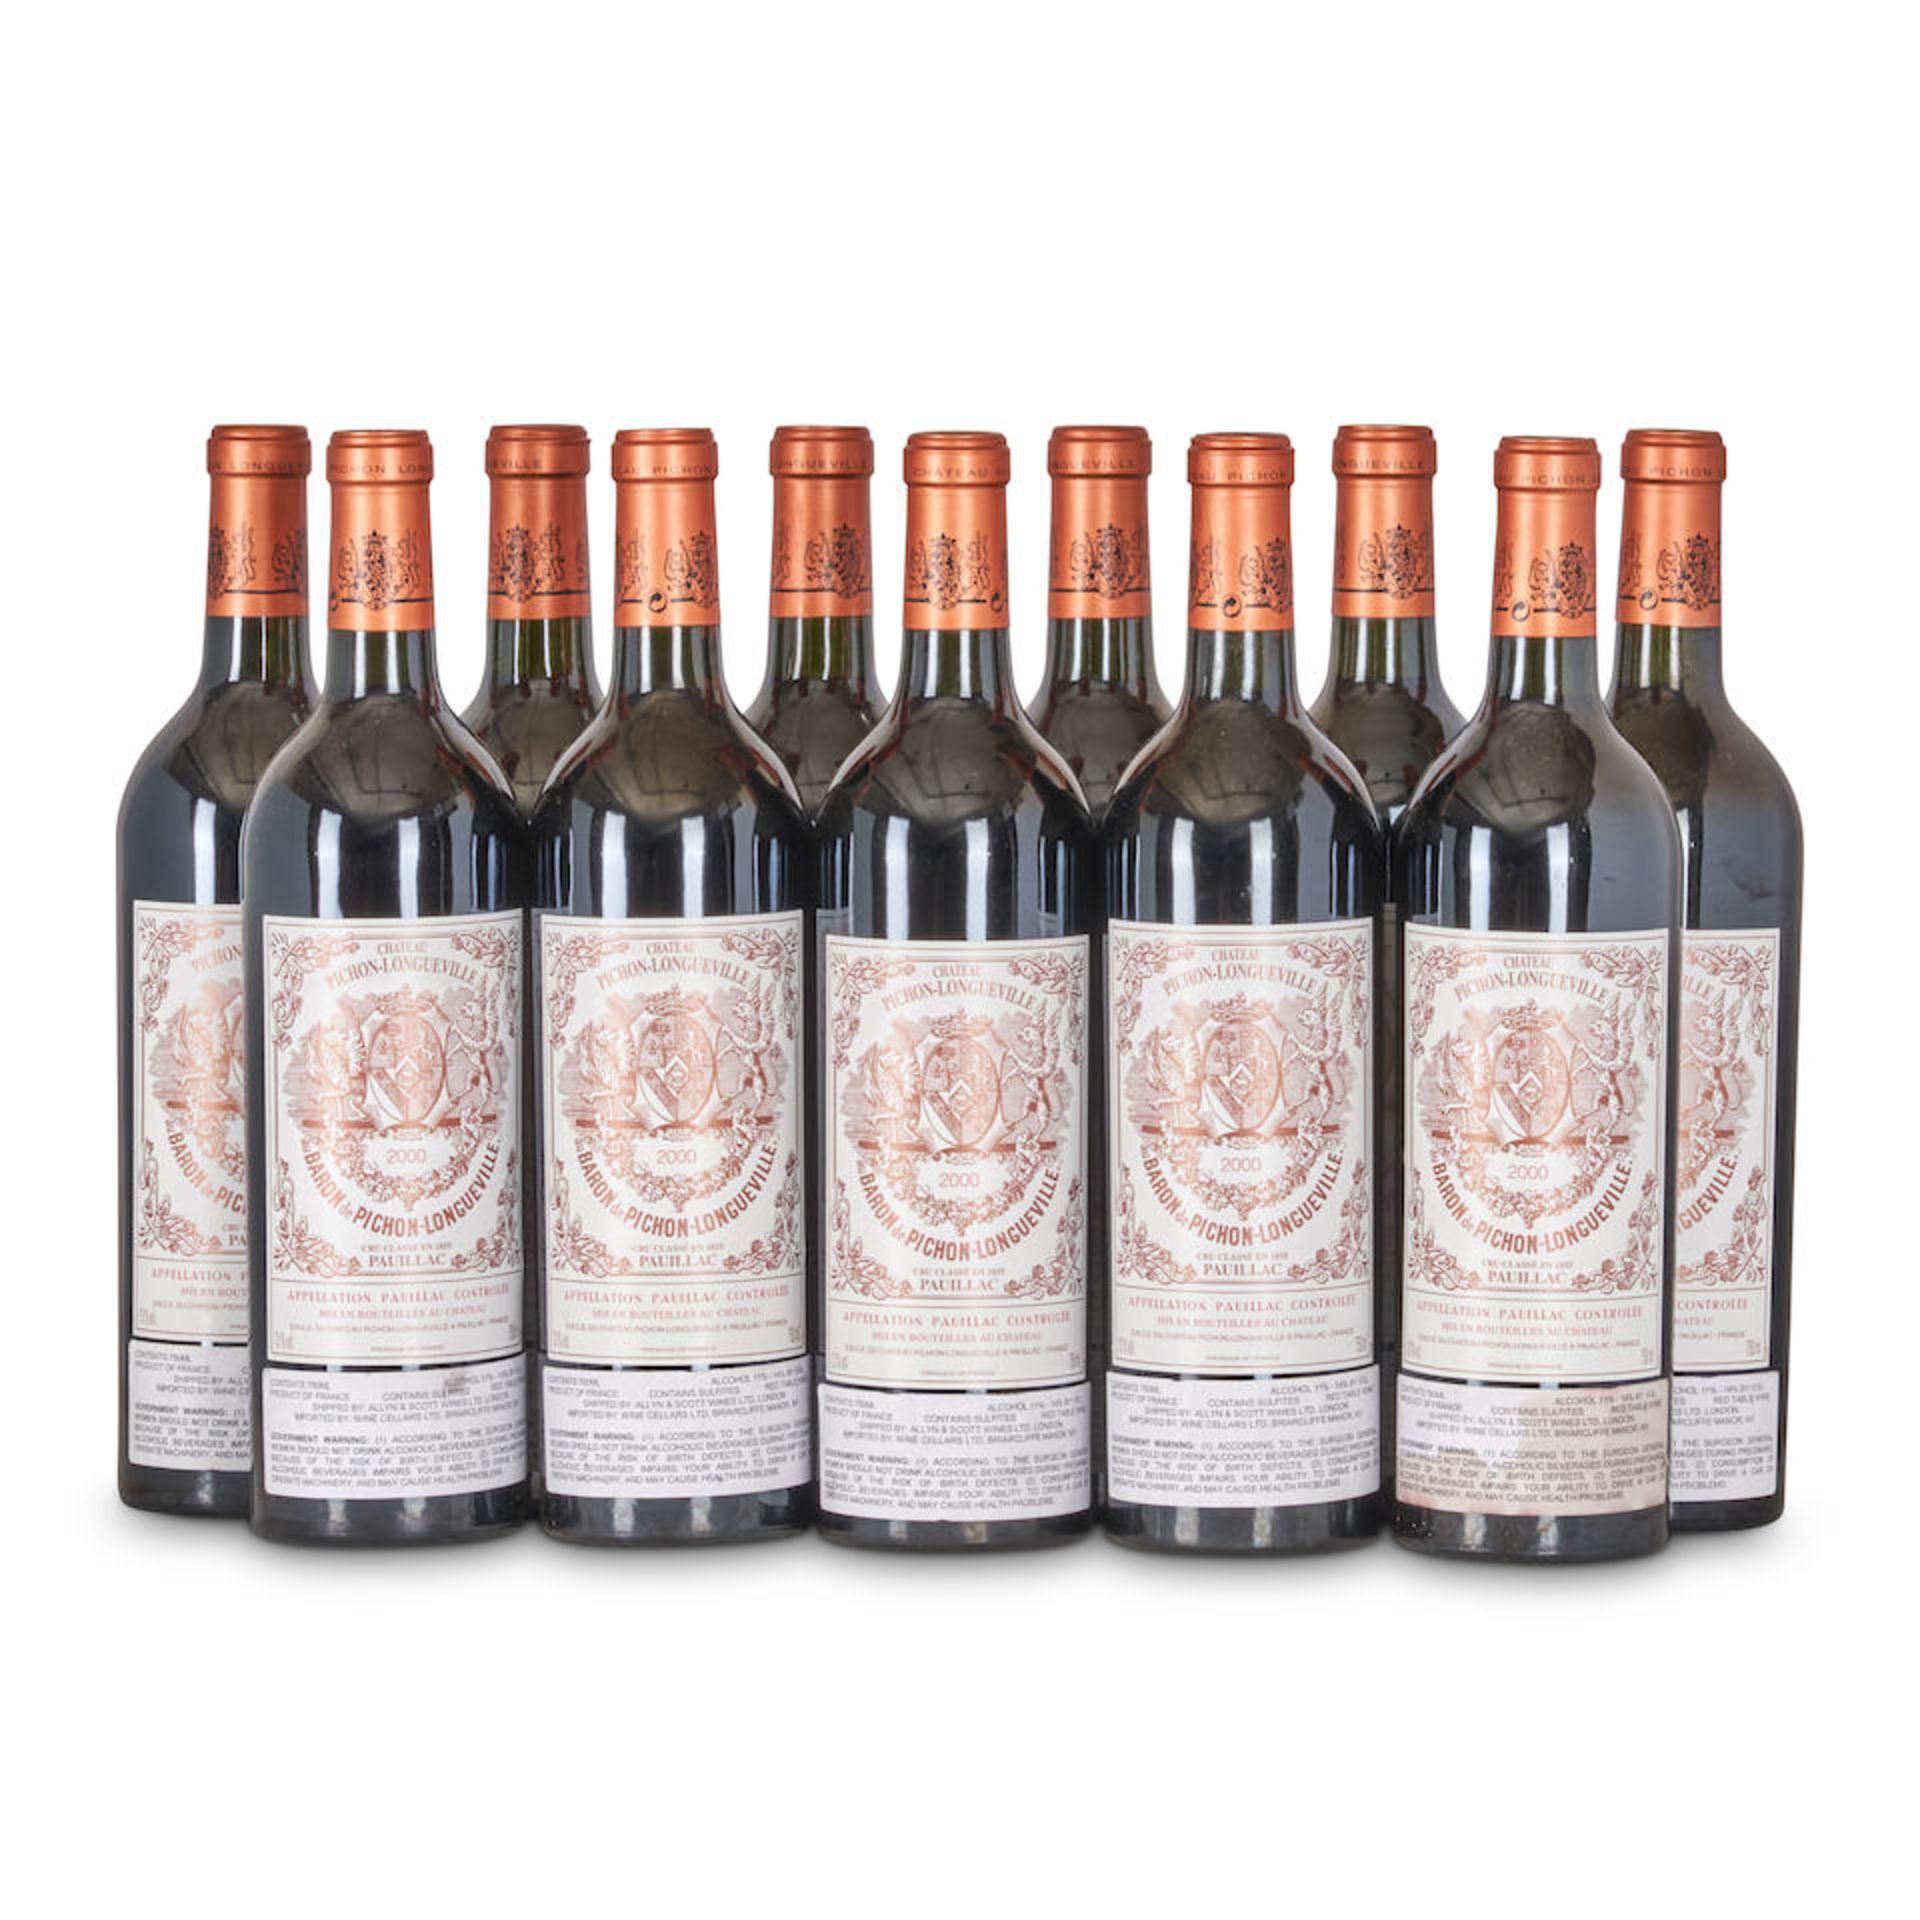 Chateau Pichon Baron 2000 (12 bottles)